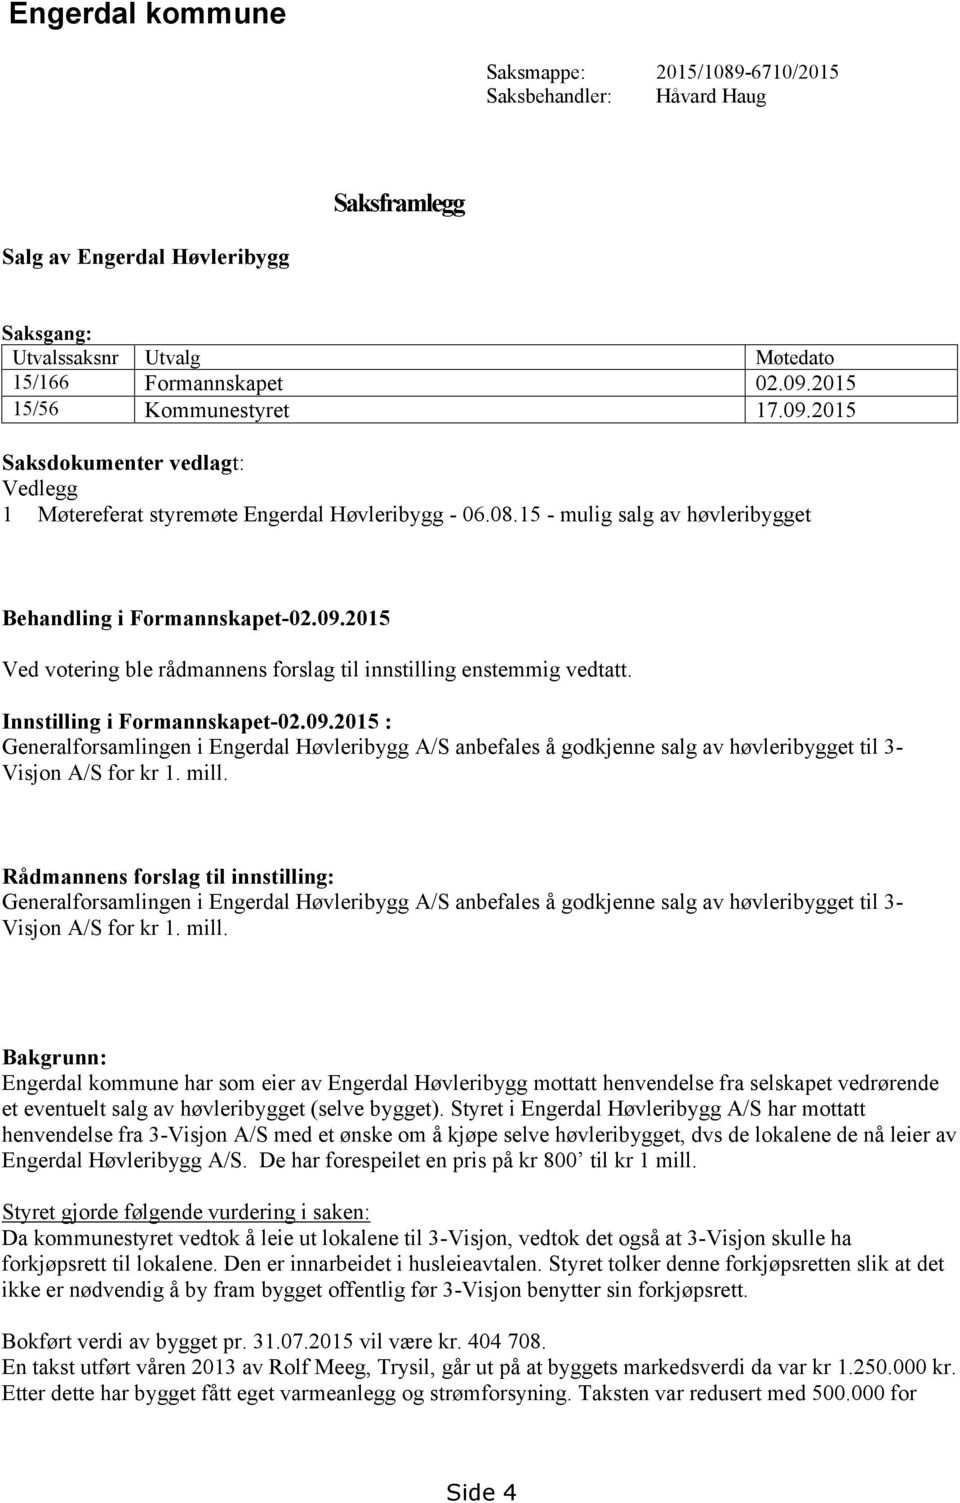 Innstilling i Formannskapet-02.09.2015 : Generalforsamlingen i Engerdal Høvleribygg A/S anbefales å godkjenne salg av høvleribygget til 3- Visjon A/S for kr 1. mill.